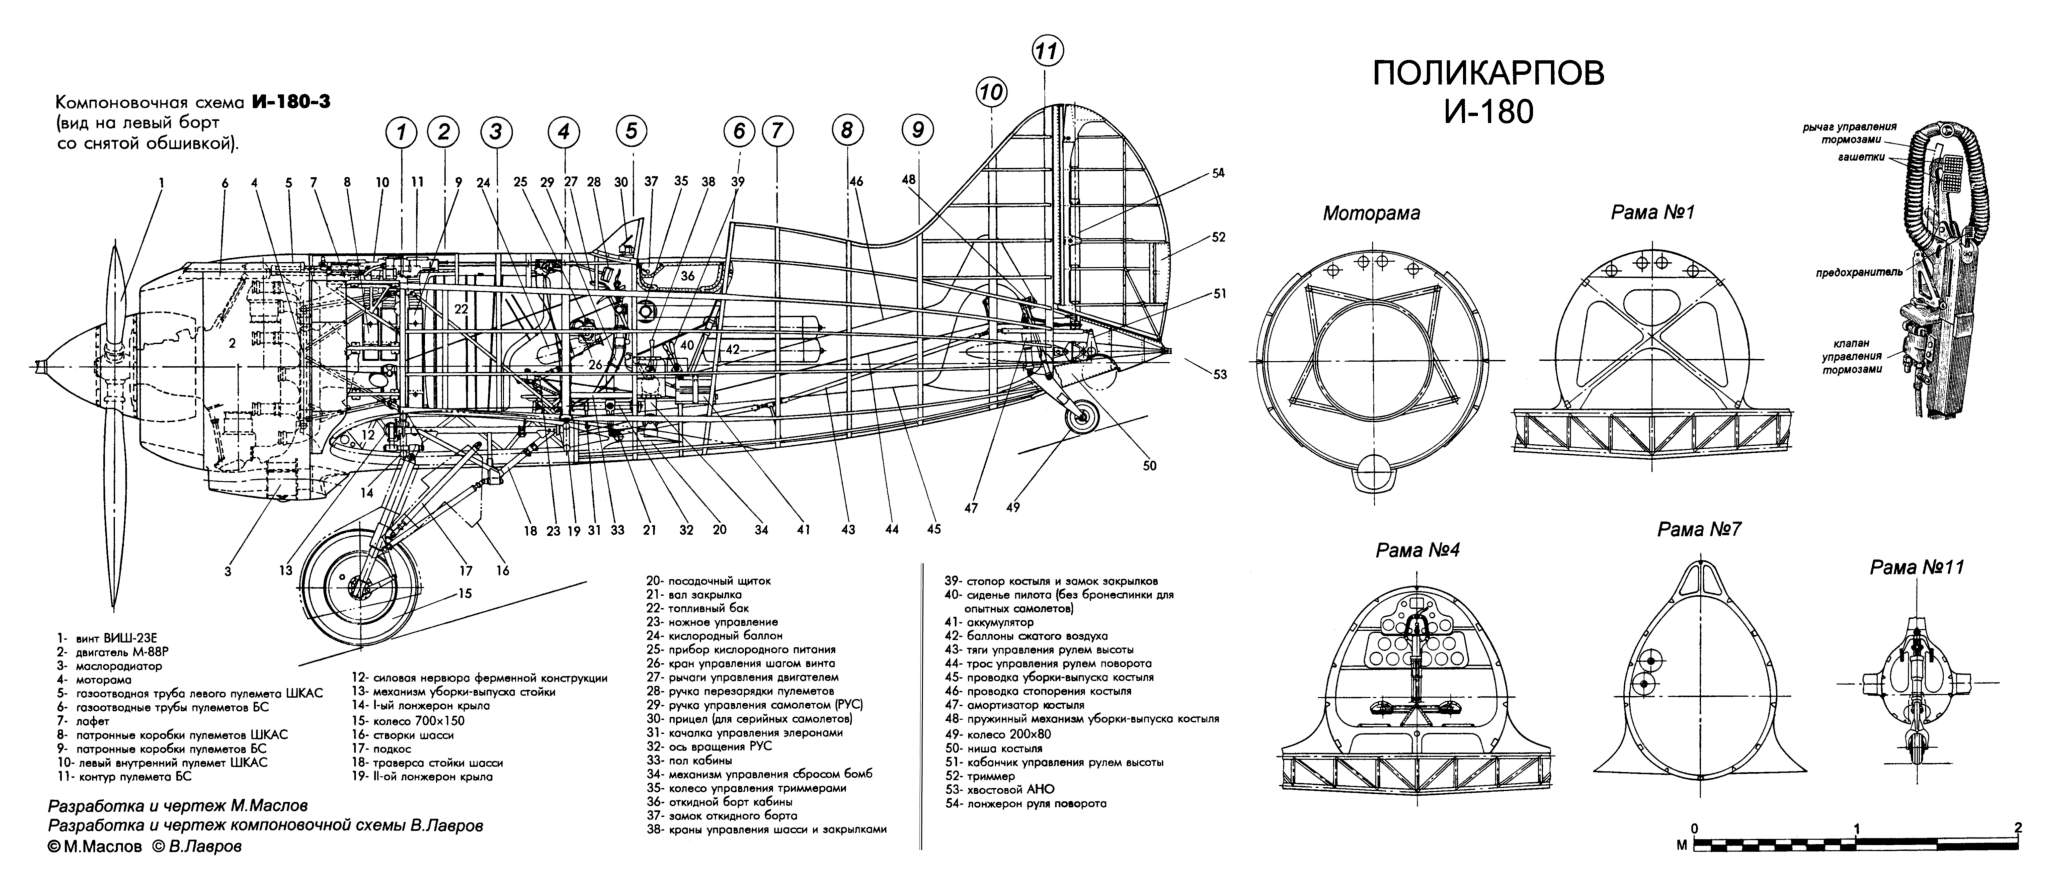 N-180-3